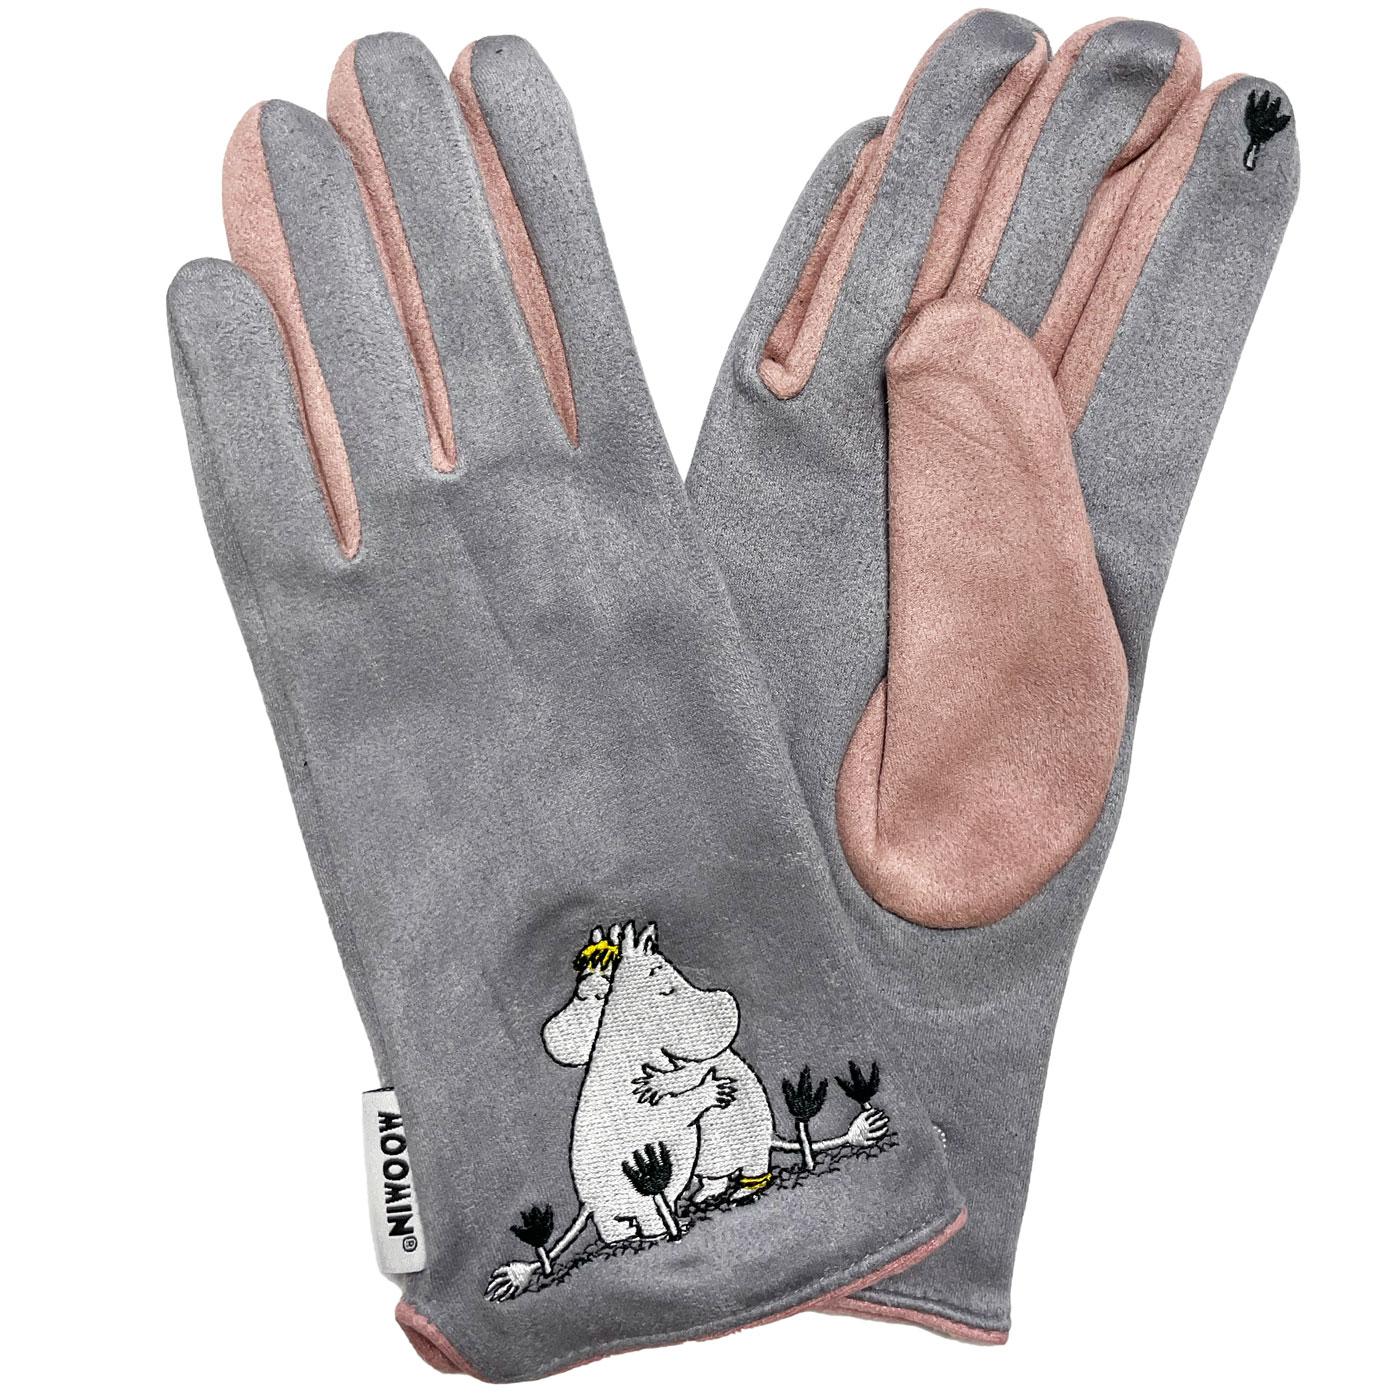 FILA Women's Fitness Gloves for Small/Medium Sizes in Gray